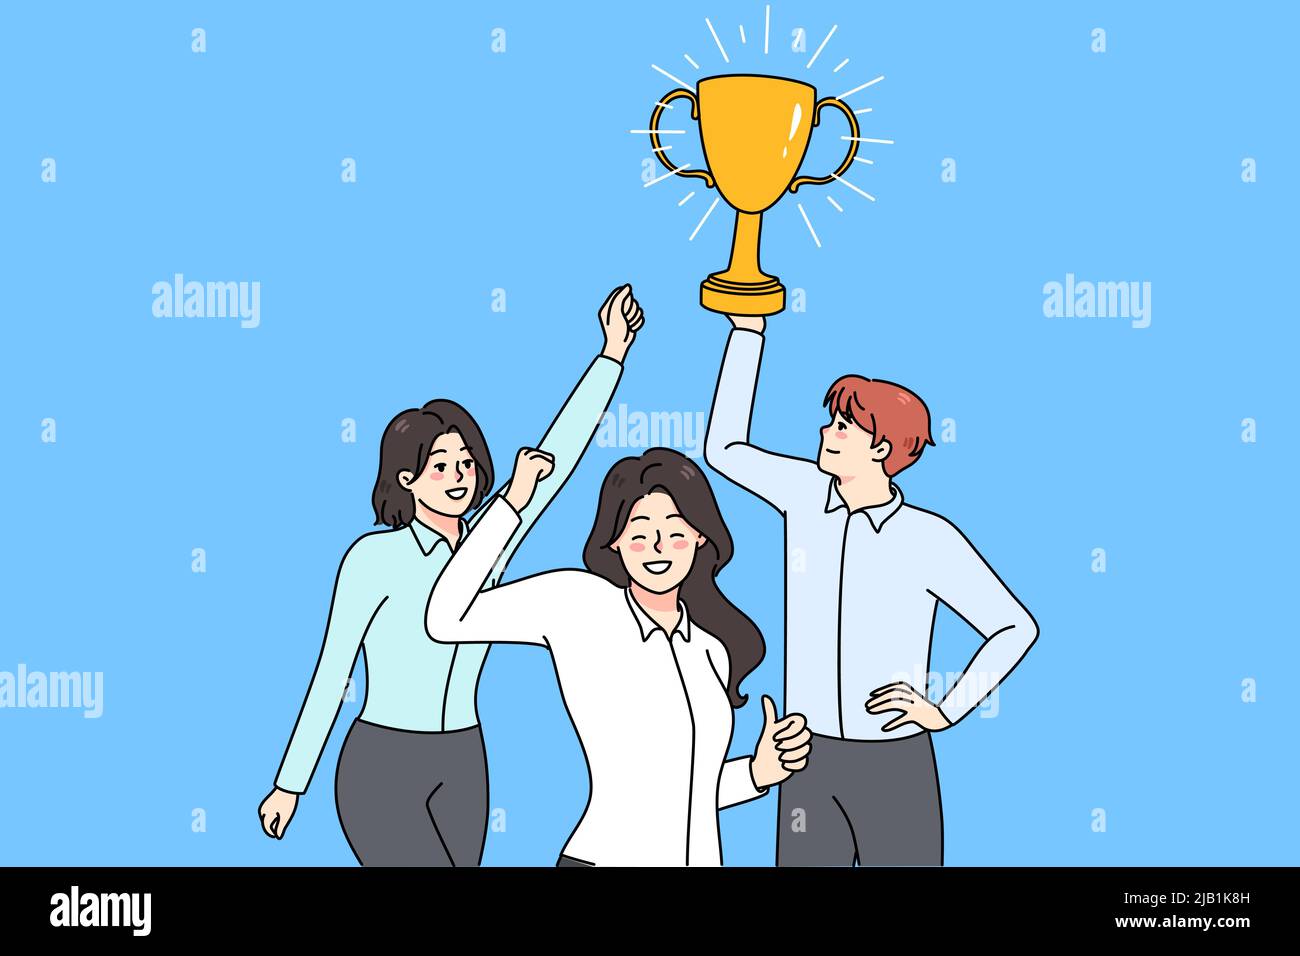 L'équipe de travail surjoyeuse tient le prix d'or célébrer la victoire partagée. Sourire divers employé avec une récompense atteindre la réussite de l'entreprise ou l'objectif ensemble. Travail d'équipe et partenariat. Illustration vectorielle. Illustration de Vecteur